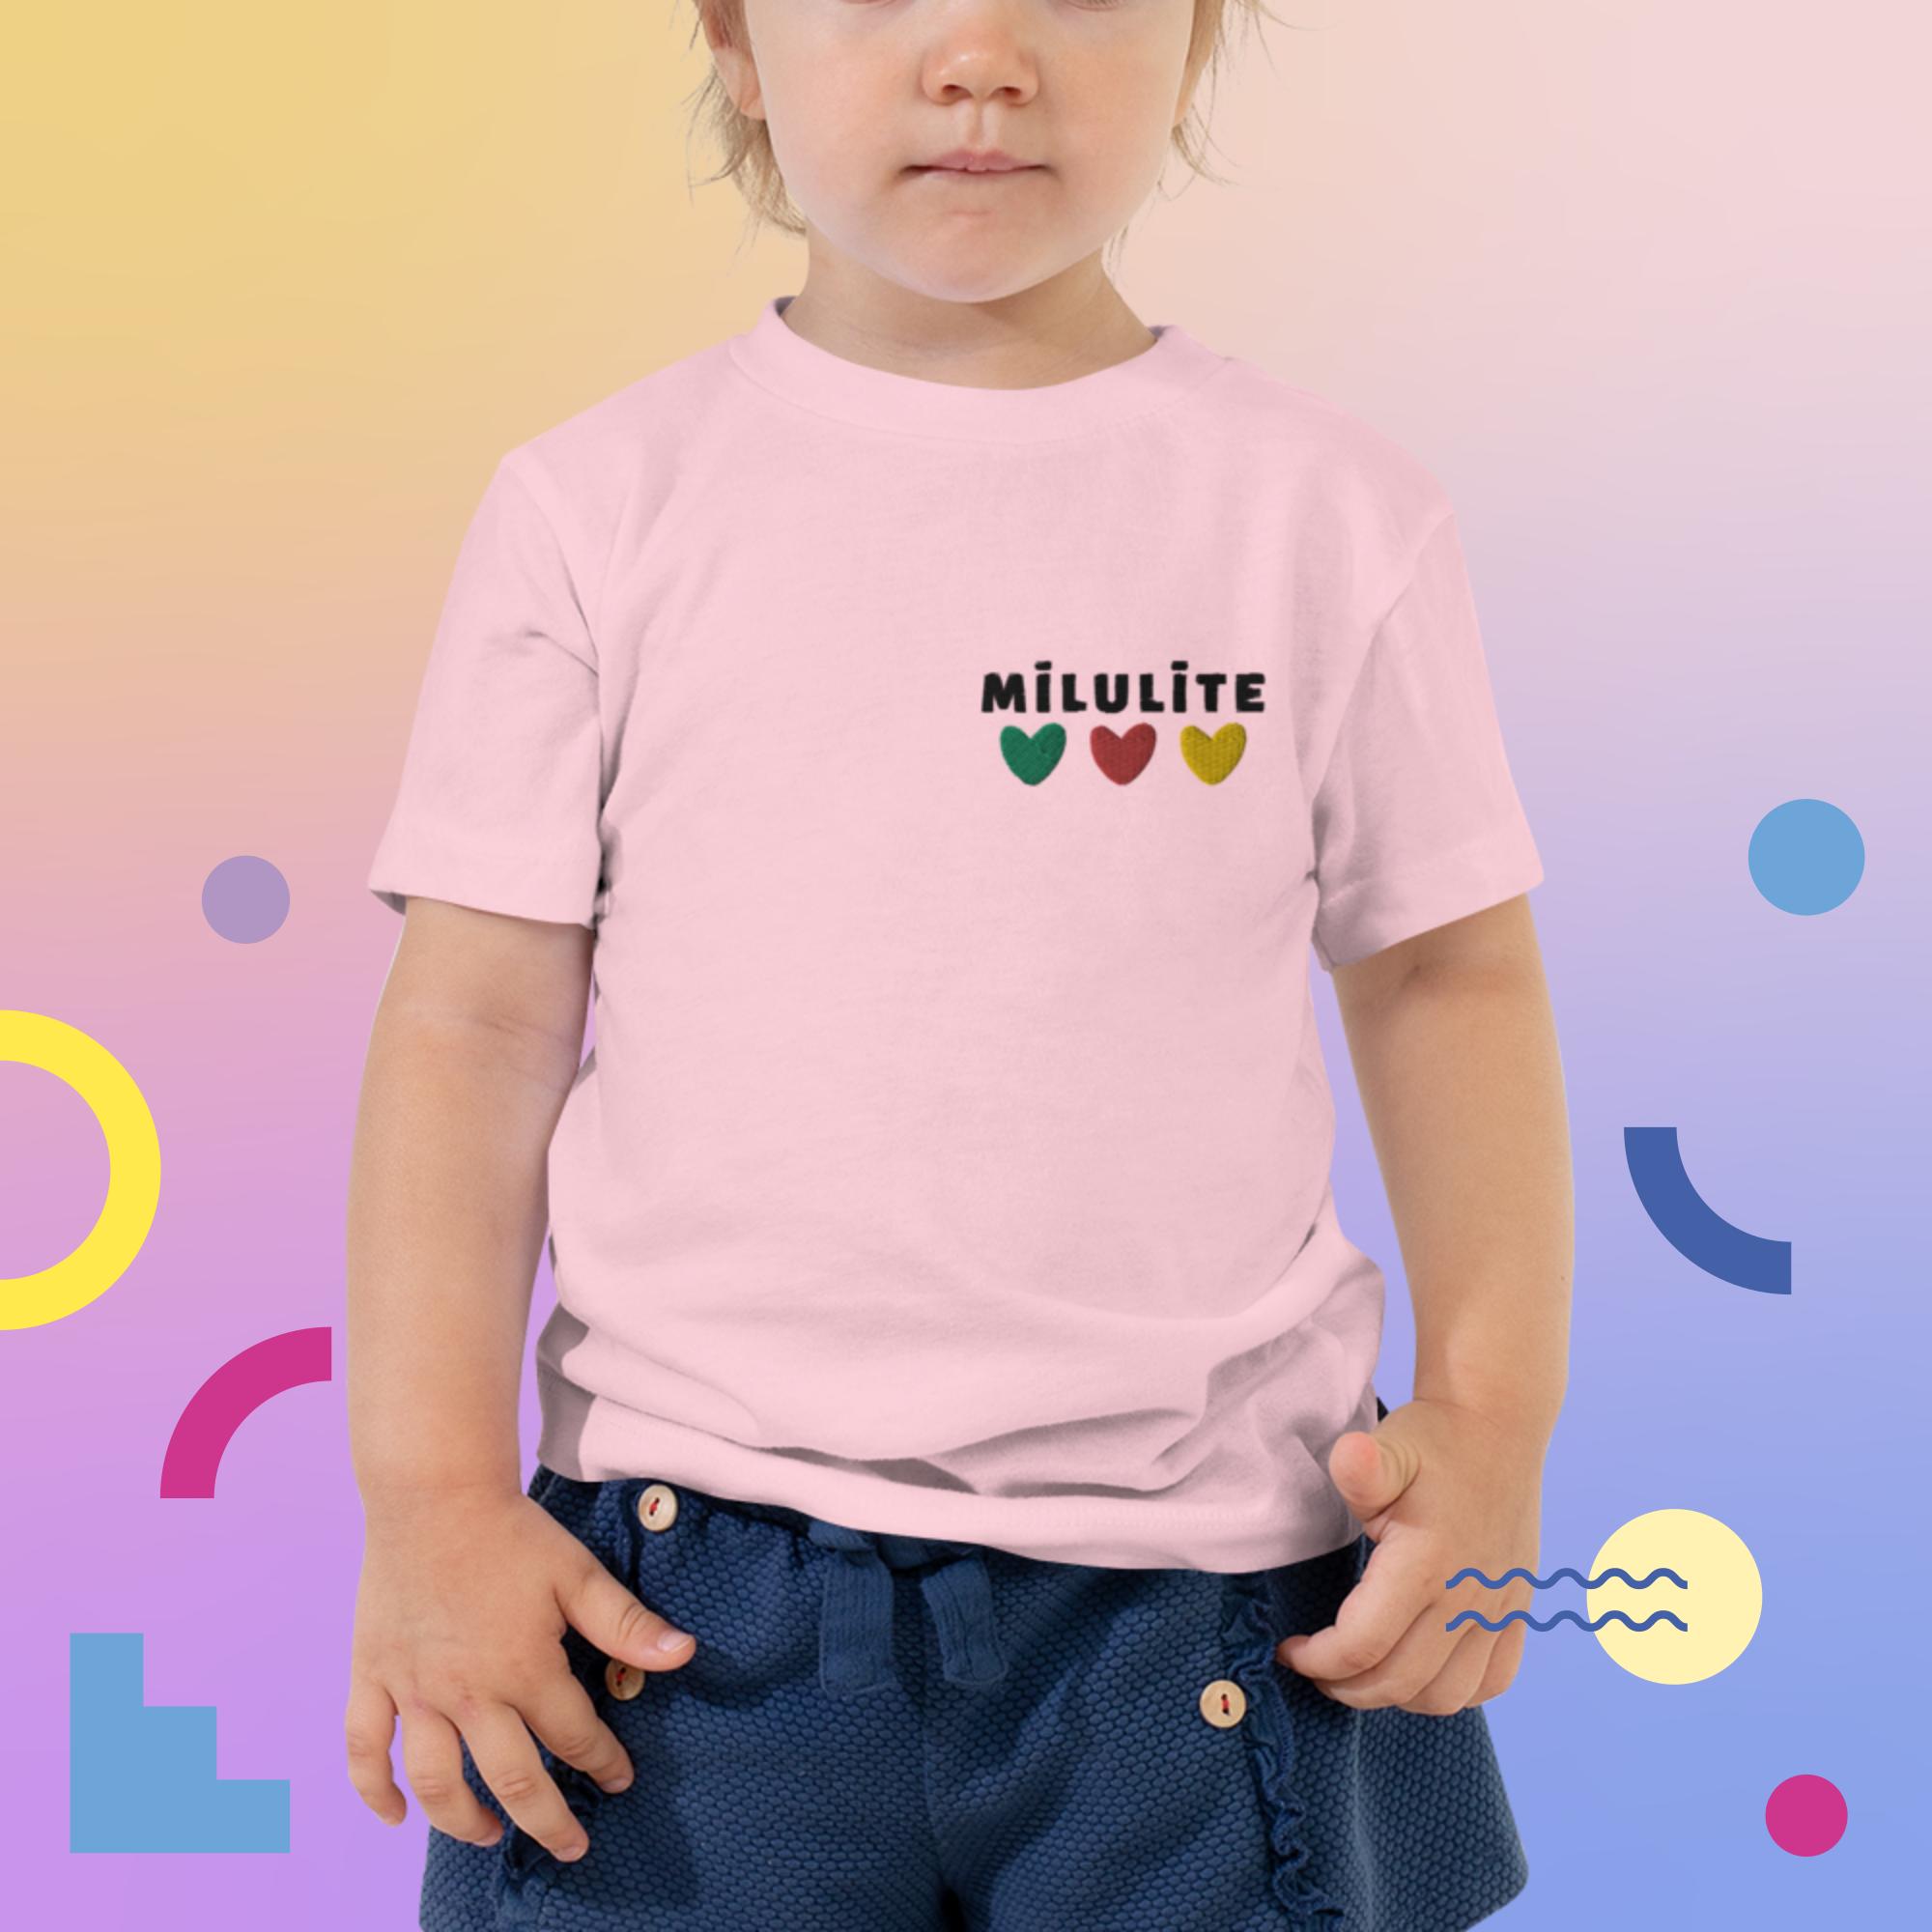 Mīkstas kokvilnas meiteņu T-krekls ar izšūtu uzrakstu Mīlulīte, pieejams rozā un baltā krāsās